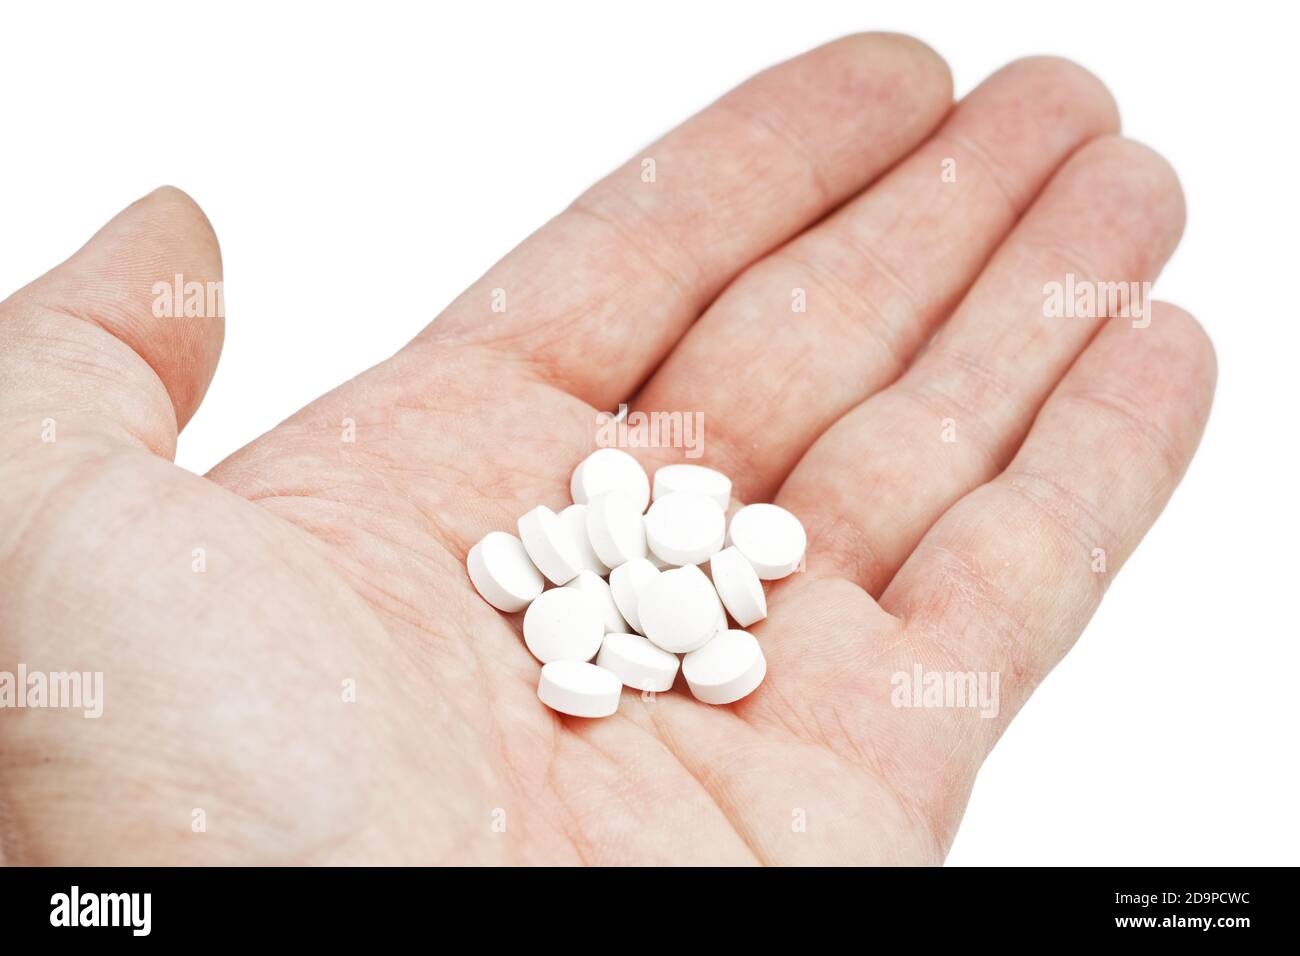 Closrup palma umana con pila di pillole bianche isolato su sfondo bianco Foto Stock